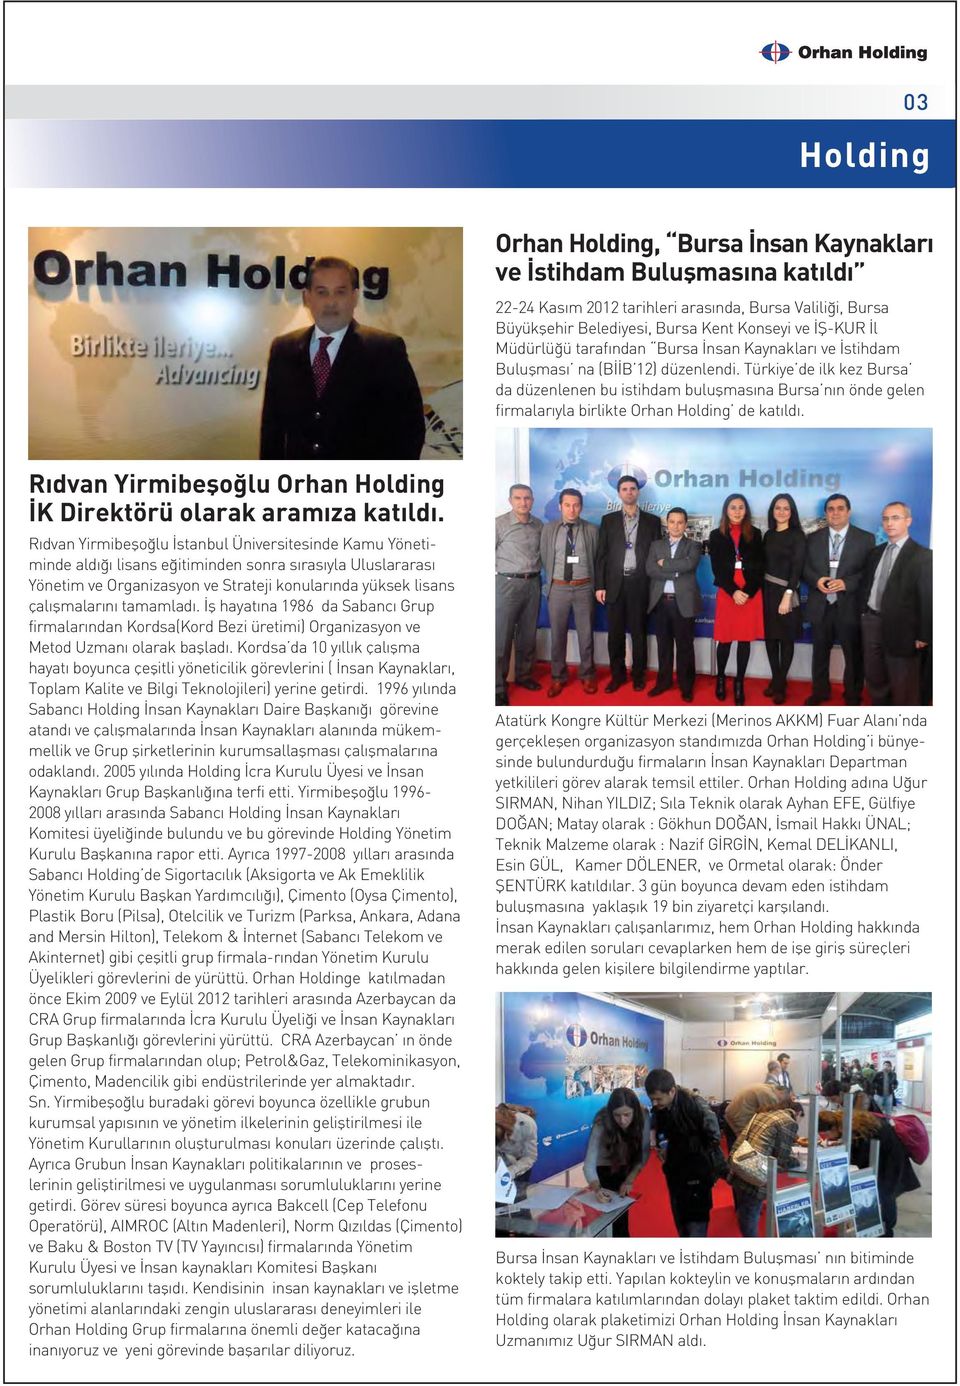 Türkiye de ilk kez Bursa da düzenlenen bu istihdam buluflmas na Bursa n n önde gelen firmalar yla birlikte Orhan Holding de kat ld.